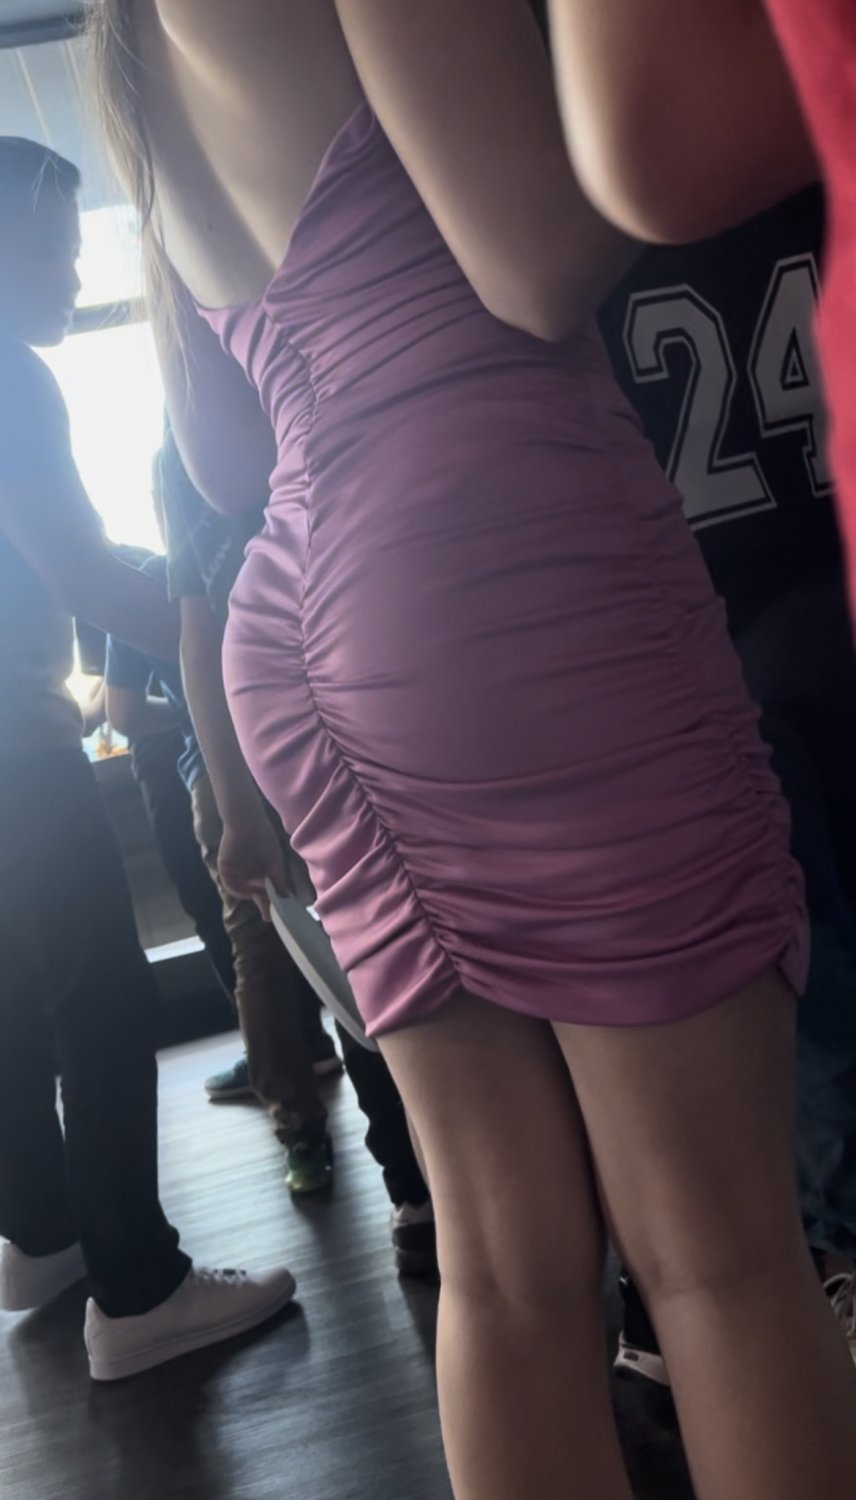 Dress - Hot teen ass tight dress - Porn Videos & Photos - EroMe